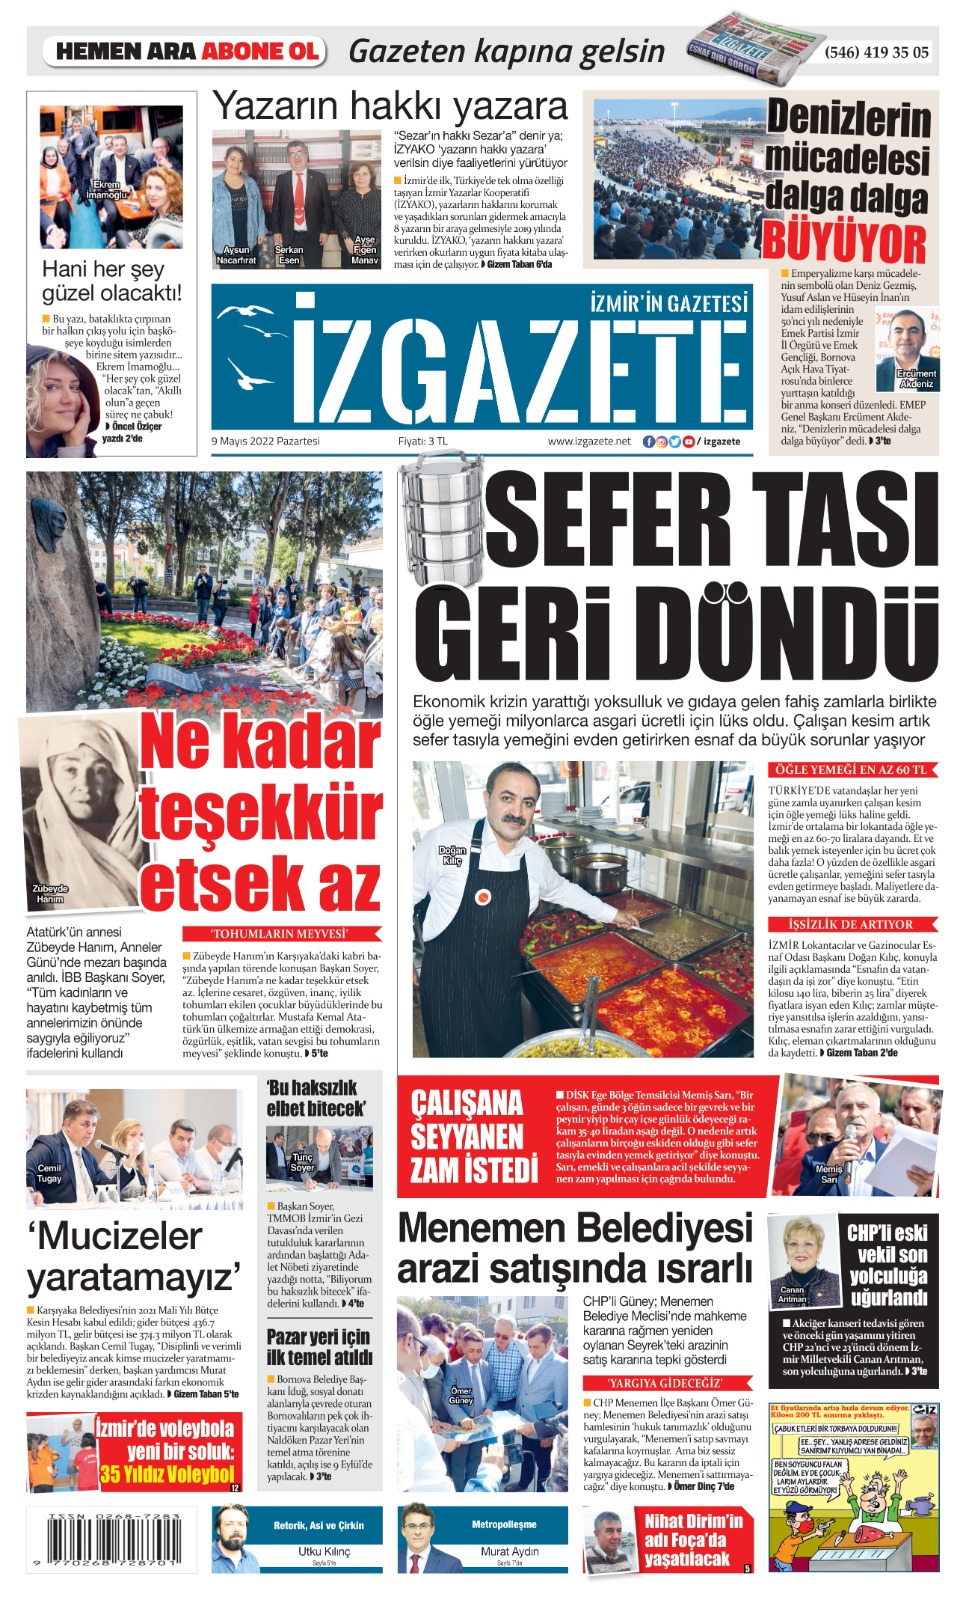 İz Gazete - İzmir'in Gazetesi - 09.05.2022 Manşeti